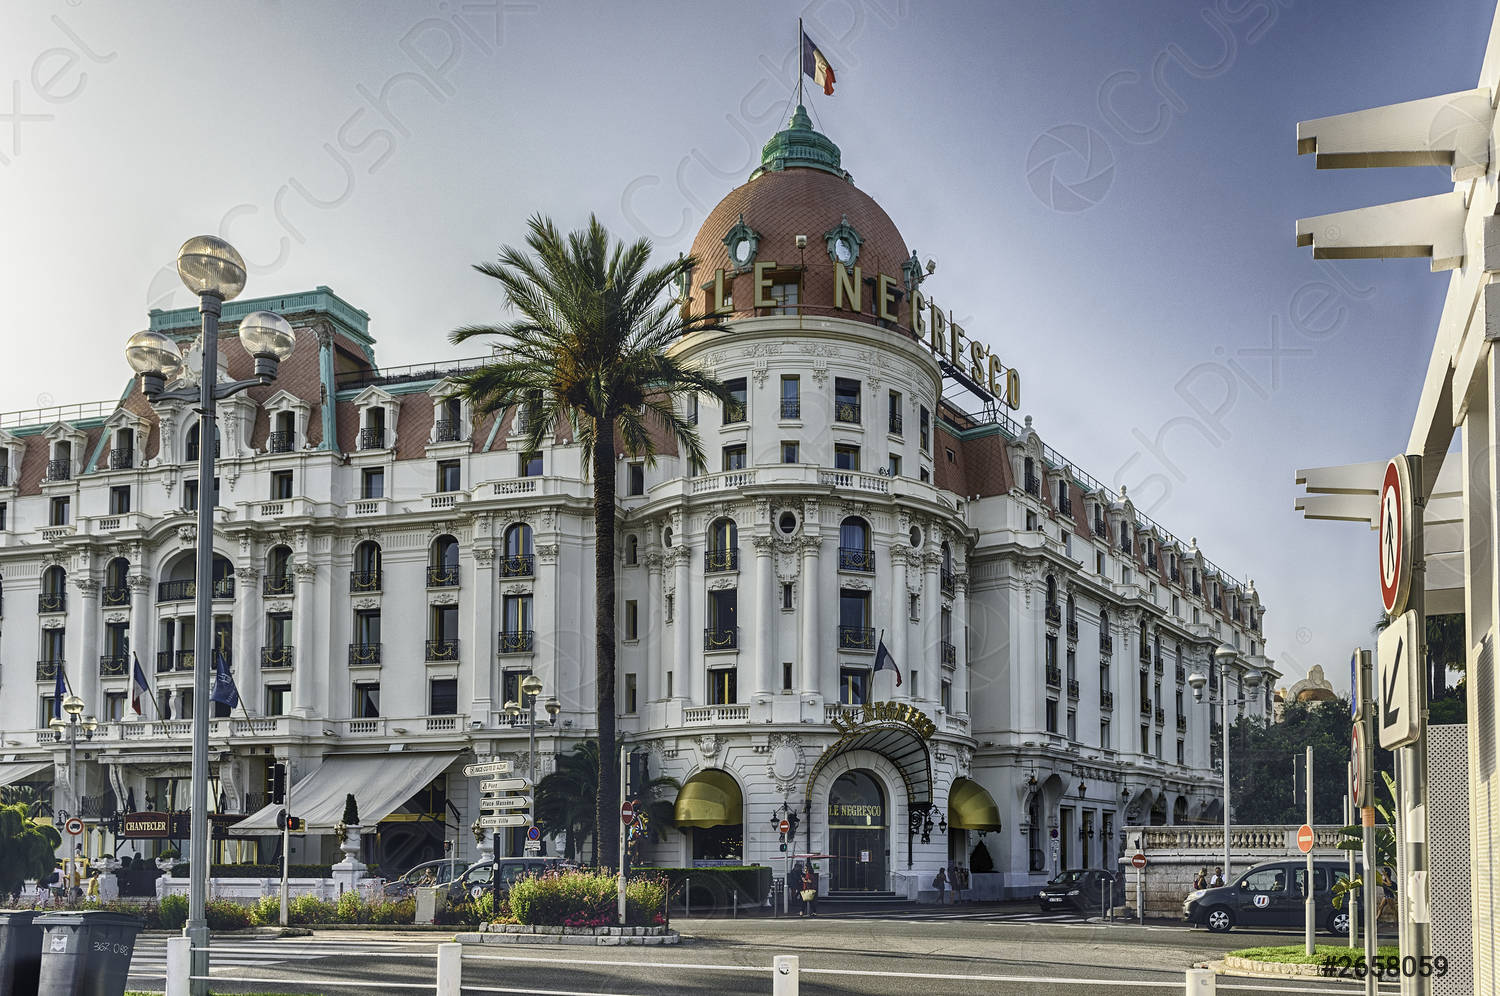 Hôtel Nice – Les meilleurs hôtels haut de gamme de la ville